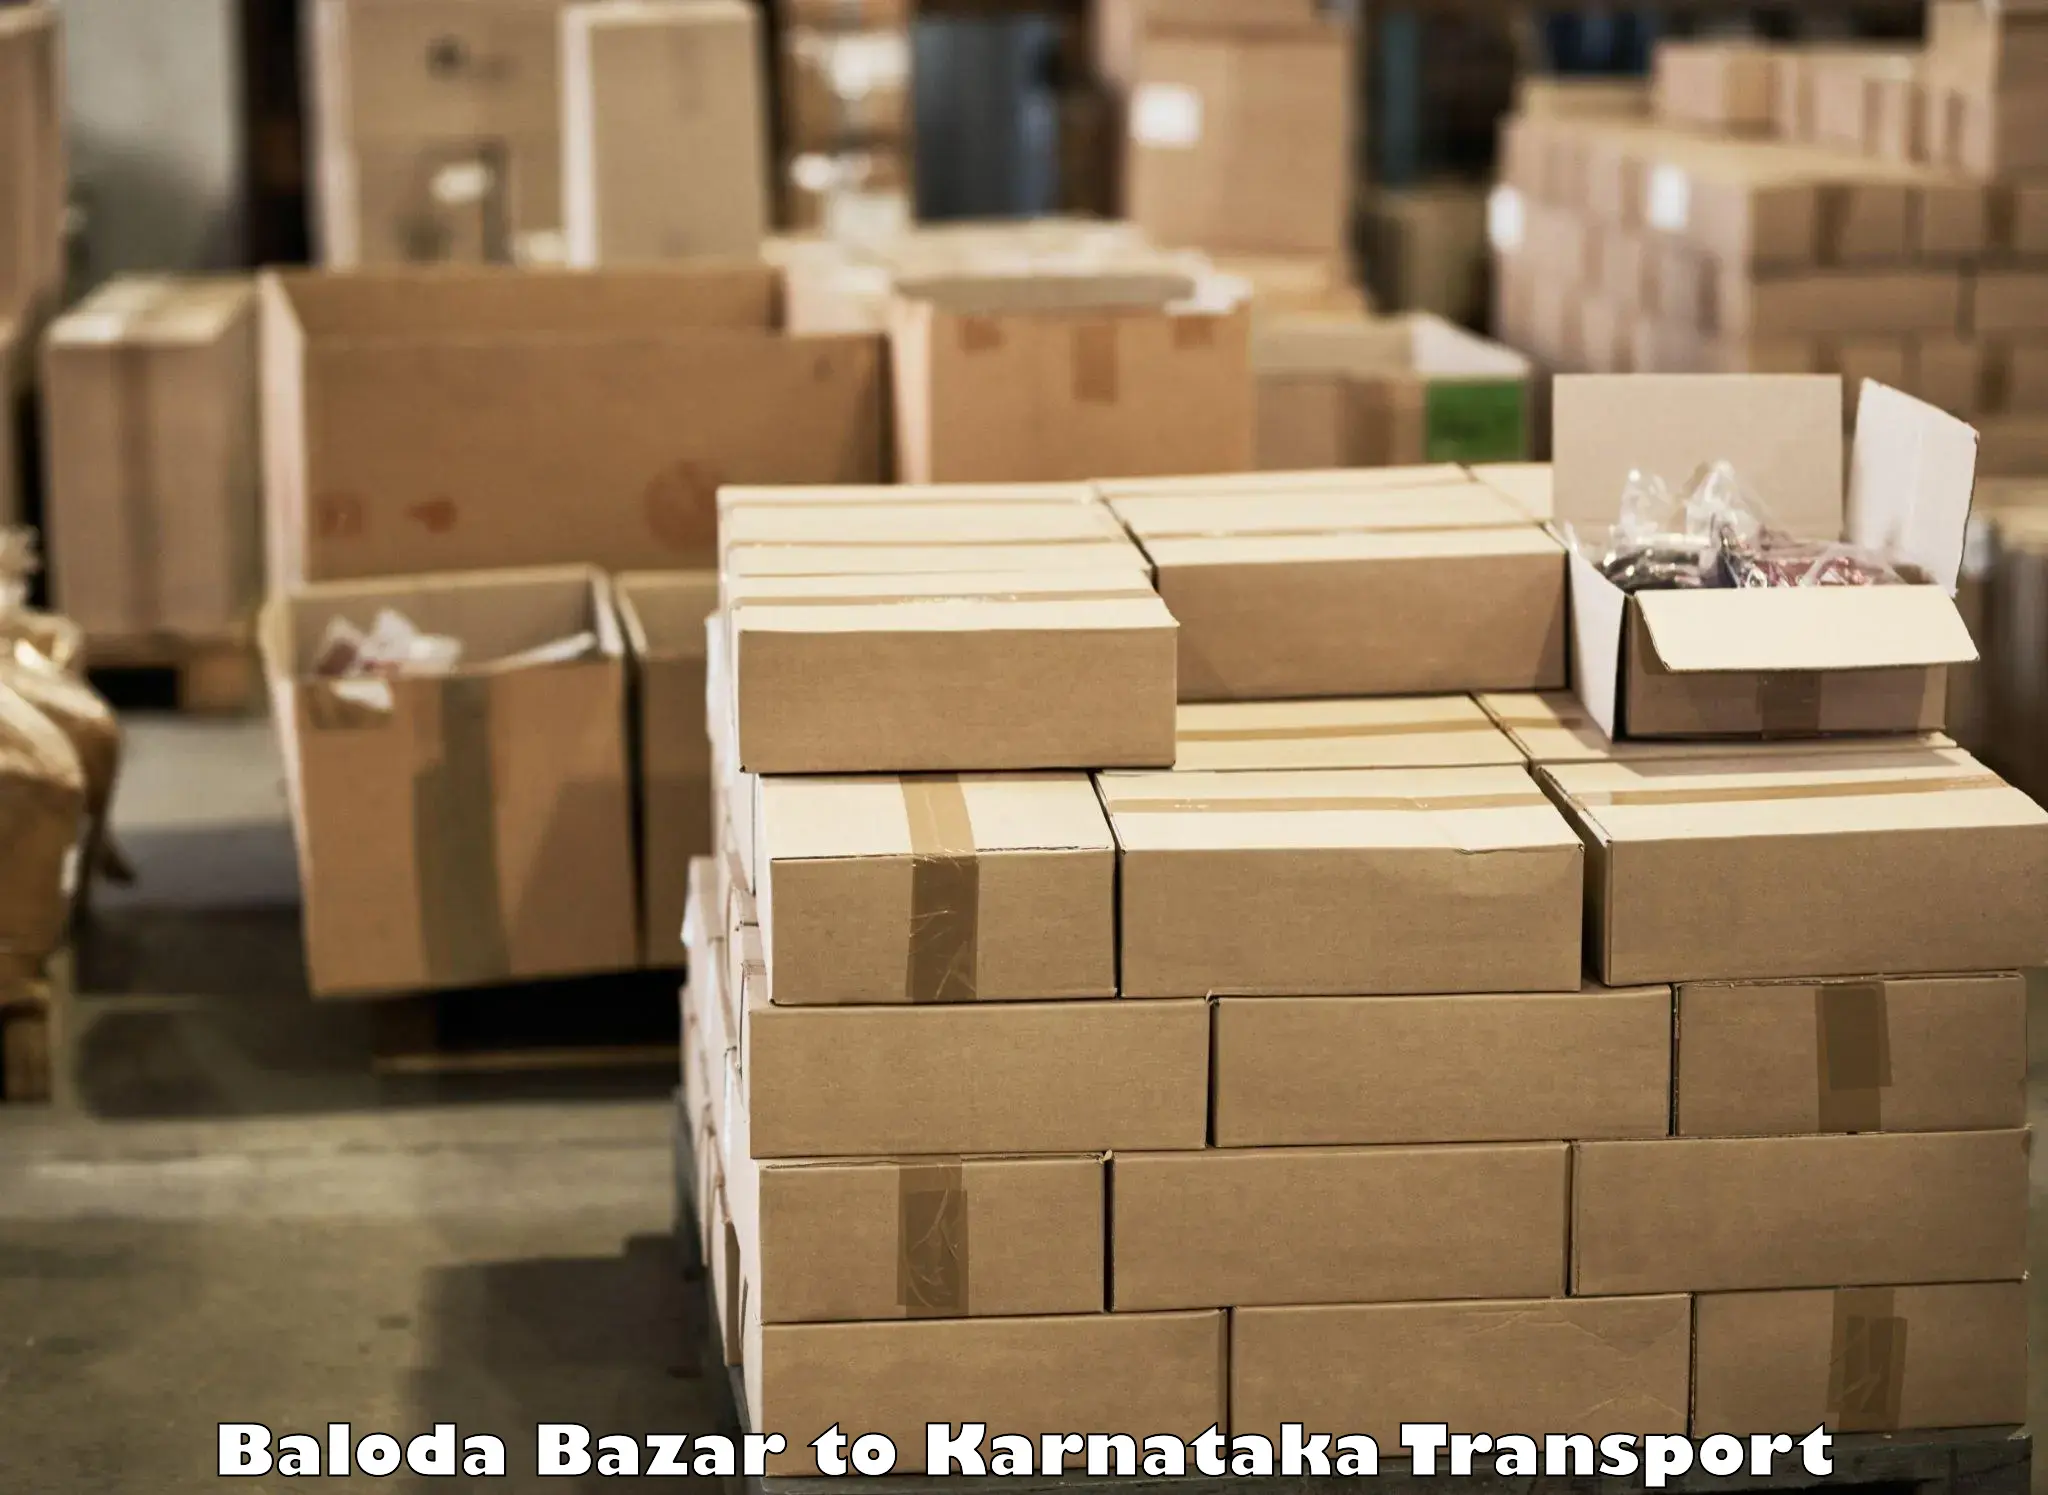 Container transport service Baloda Bazar to Kalaburagi